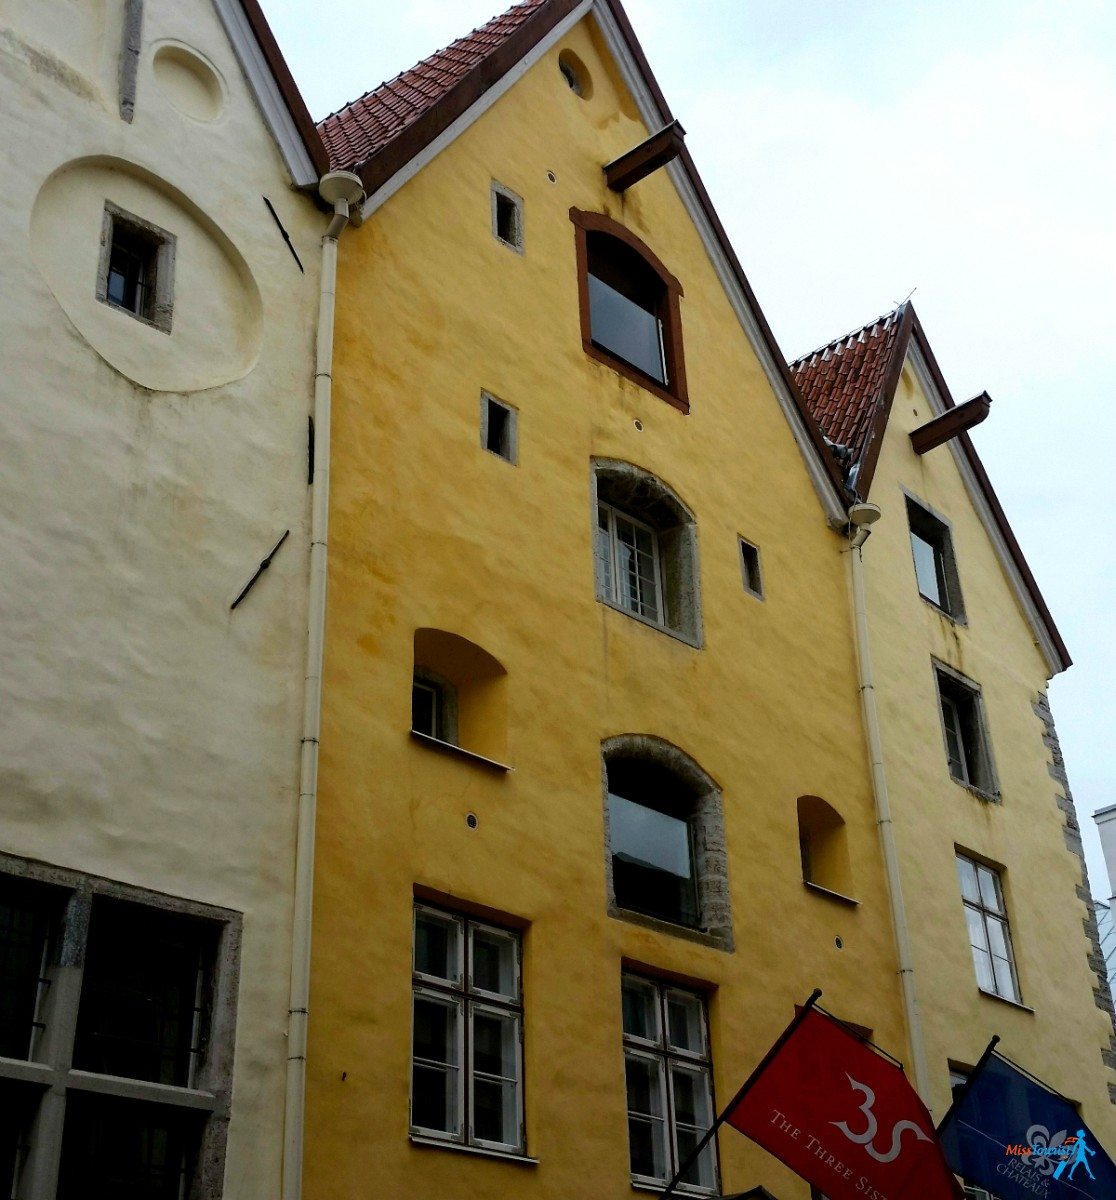 THE three sisters hotel in Tallinn Estonia